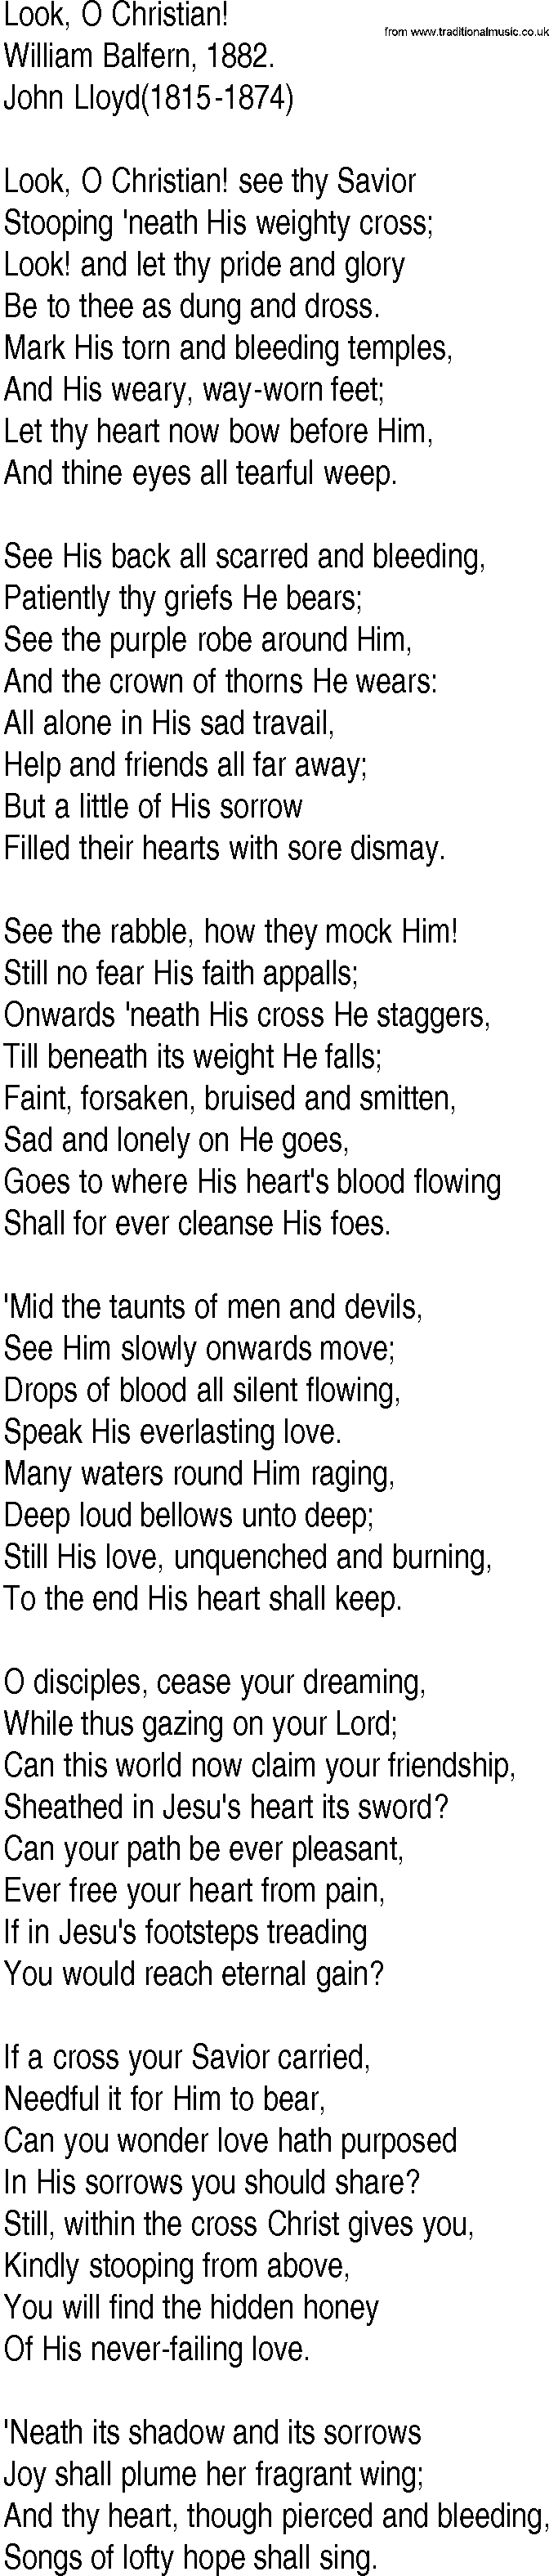 Hymn and Gospel Song: Look, O Christian! by William Balfern lyrics